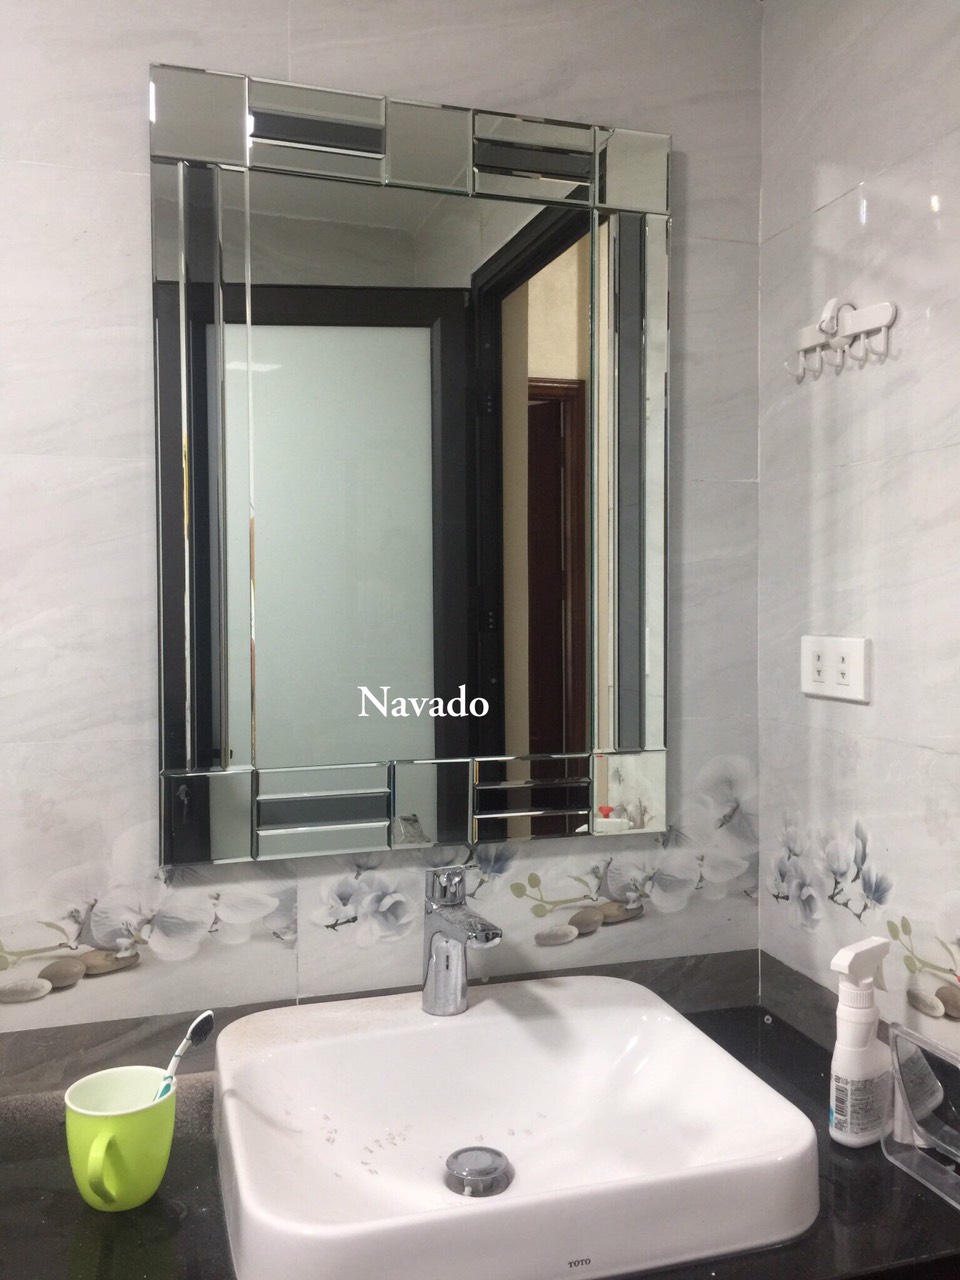 Gương phòng tắm cao cấp Castro - Gương phòng tắm TOTO: Gương phòng tắm cao cấp Castro là một trong những lựa chọn hàng đầu cho không gian tắm sang trọng và hiện đại. Với thiết kế tối giản và chất lượng đảm bảo, gương Castro sẽ mang đến cho bạn trải nghiệm tốt nhất khi sử dụng.